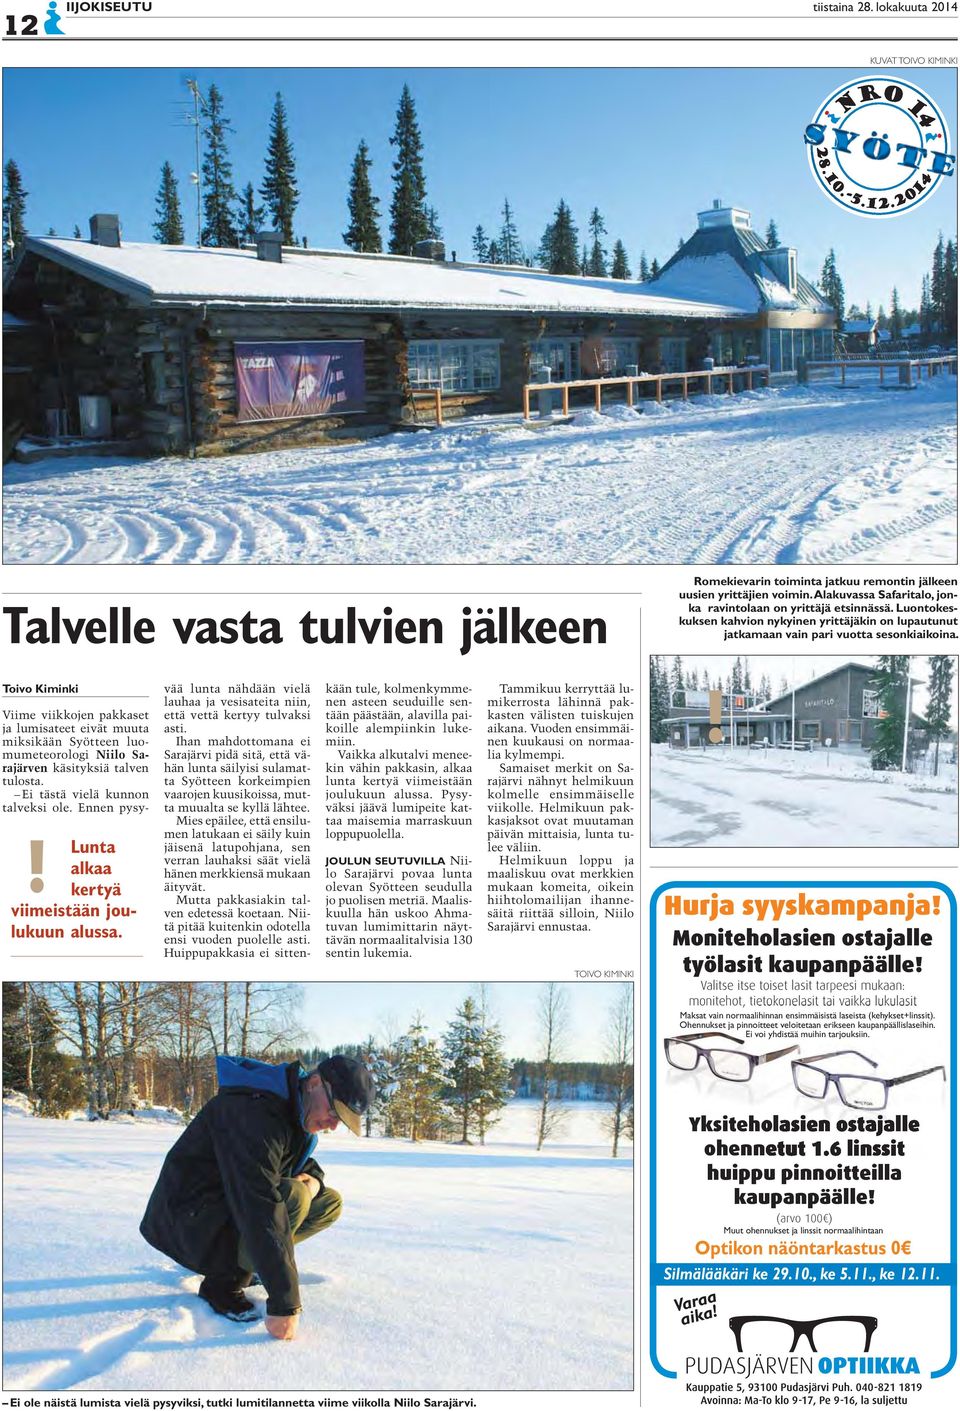 Lunta alkaa kertyä viimeistään joulukuun alussa. Viime viikkojen pakkaset ja lumisateet eivät muuta miksikään Syötteen luomumeteorologi Niilo Sarajärven käsityksiä talven tulosta.